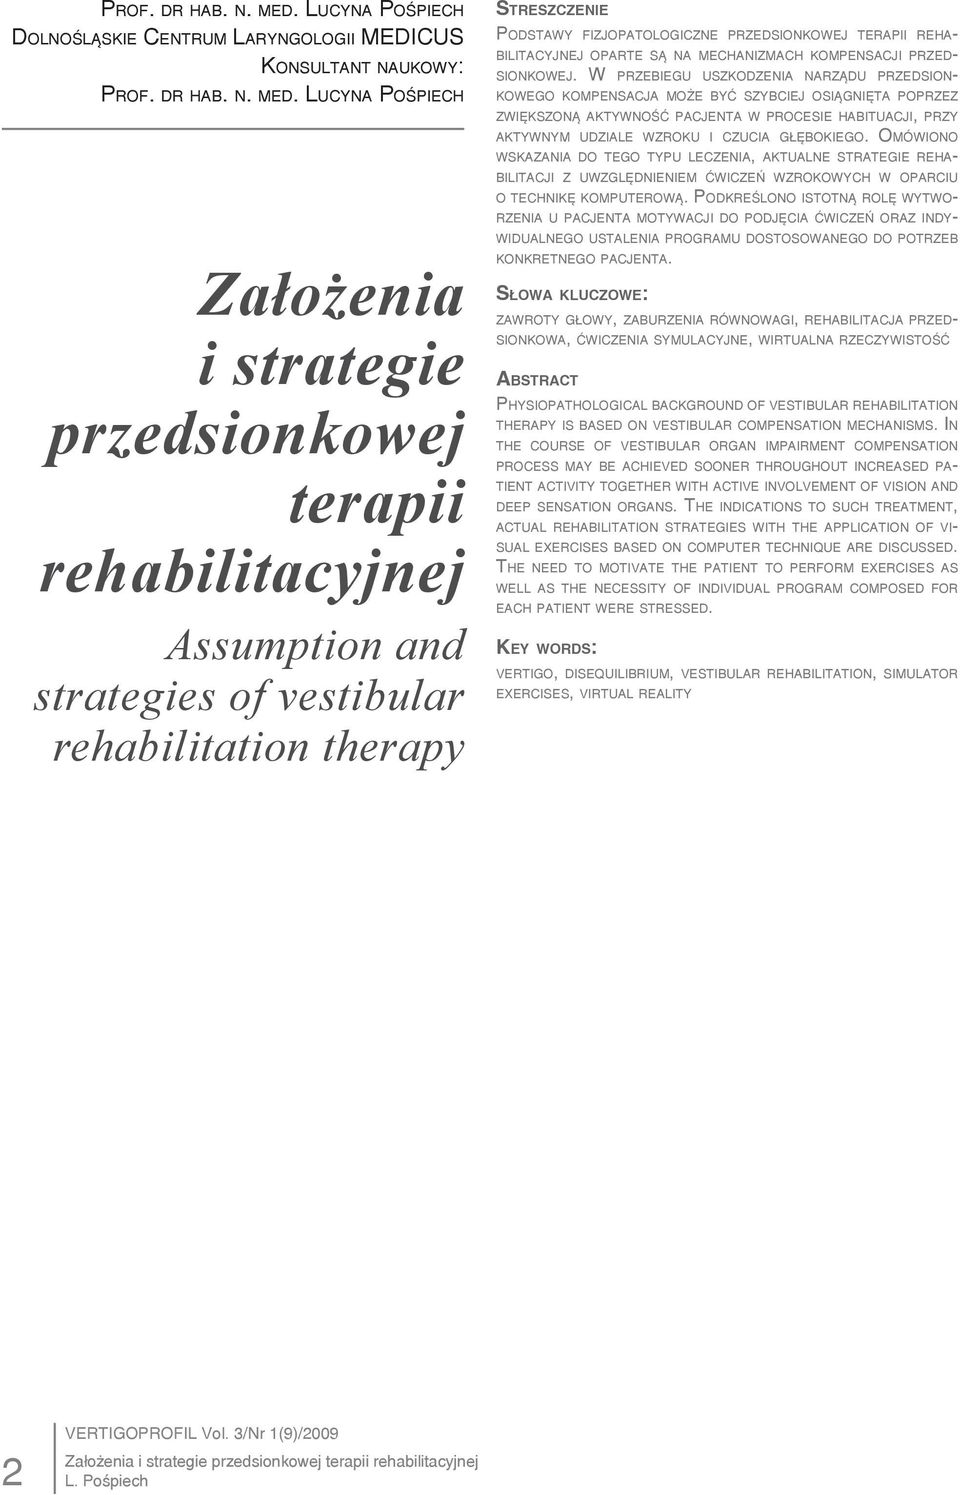 rehabilitation therapy Podstawy fizjopatologiczne przedsionkowej terapii rehabilitacyjnej oparte są na mechanizmach kompensacji przedsionkowej.